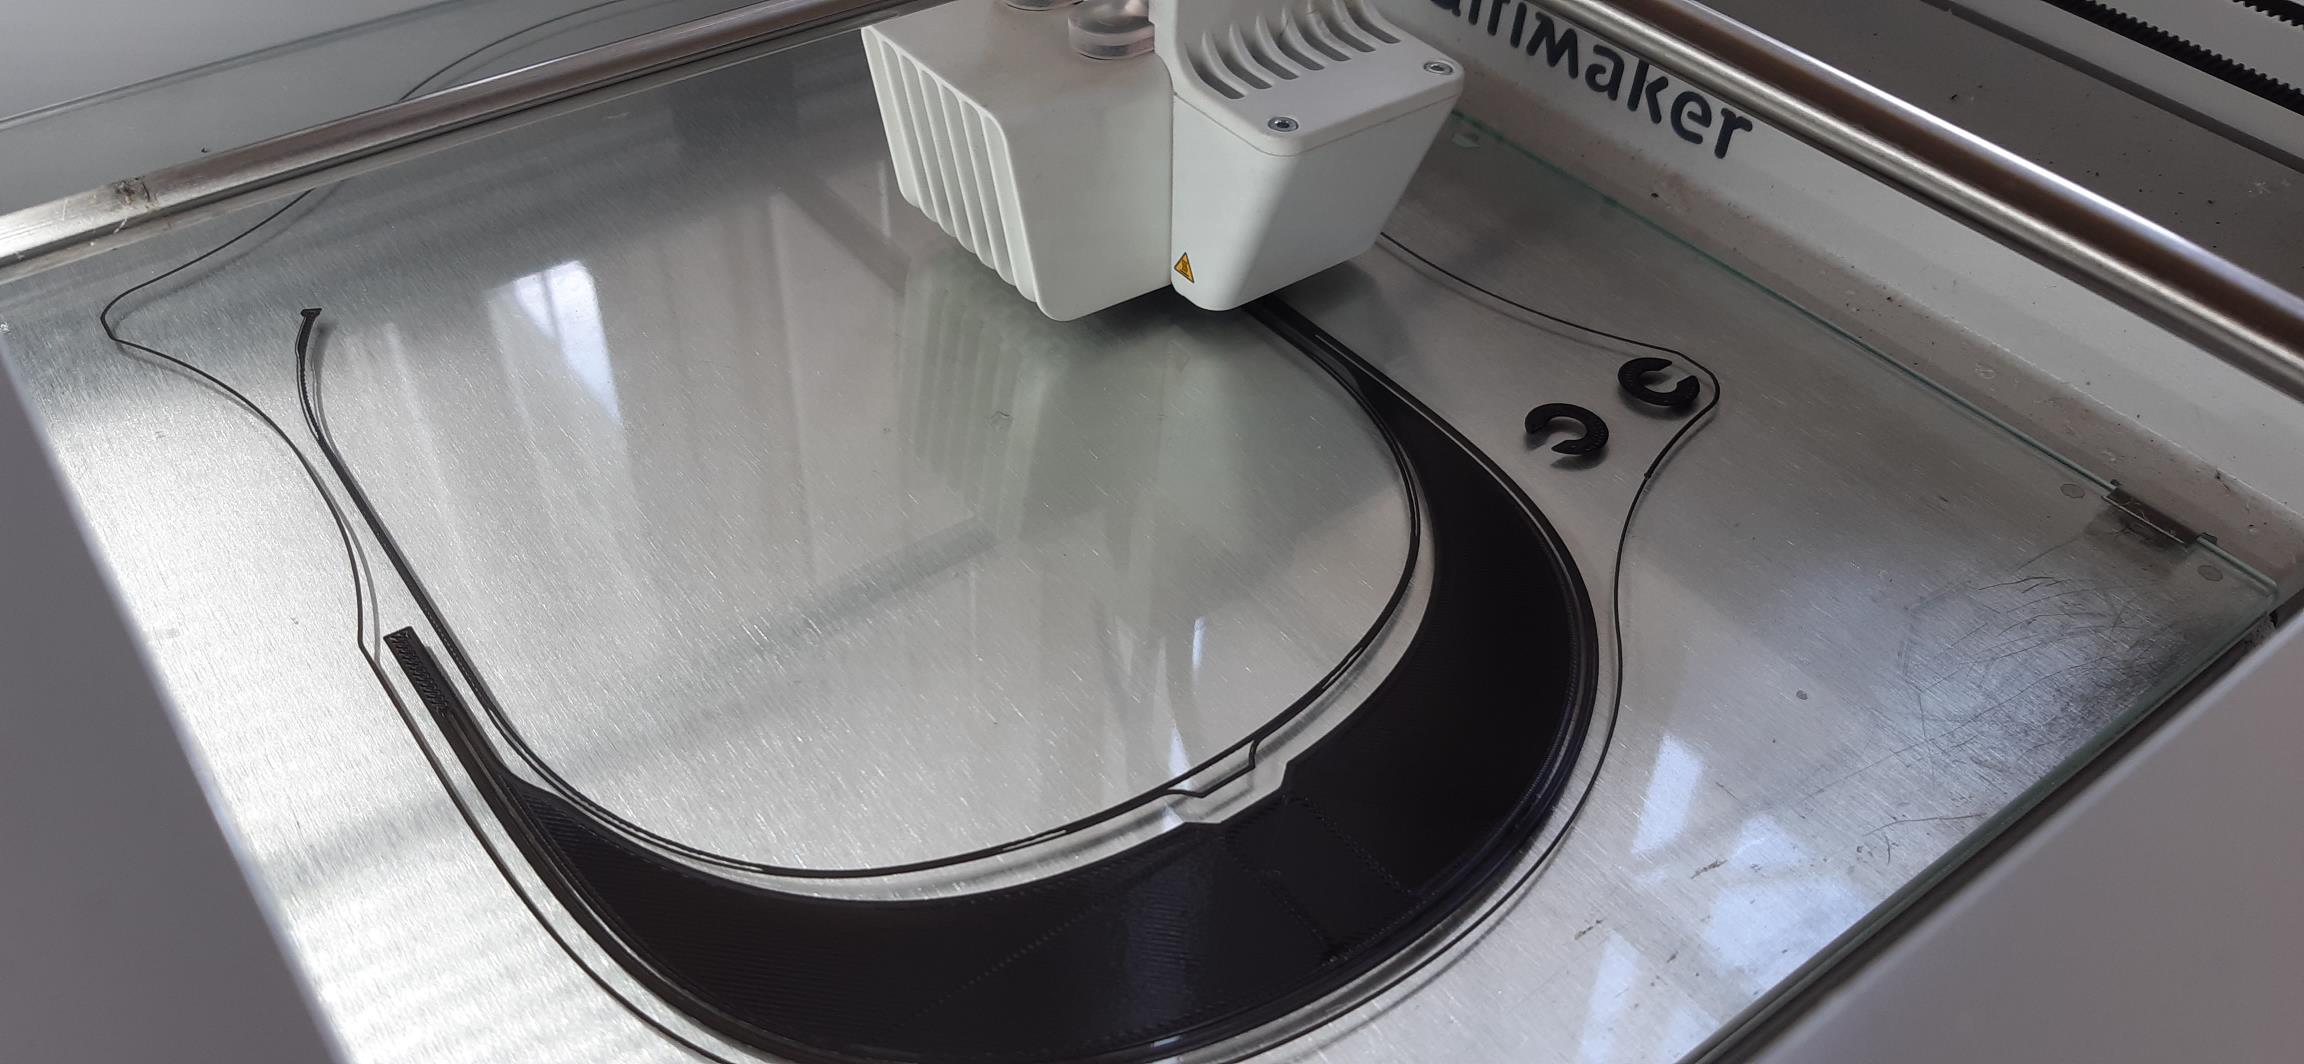 IVECO fabrica pantallas protectoras en las impresoras 3D de sus plantas